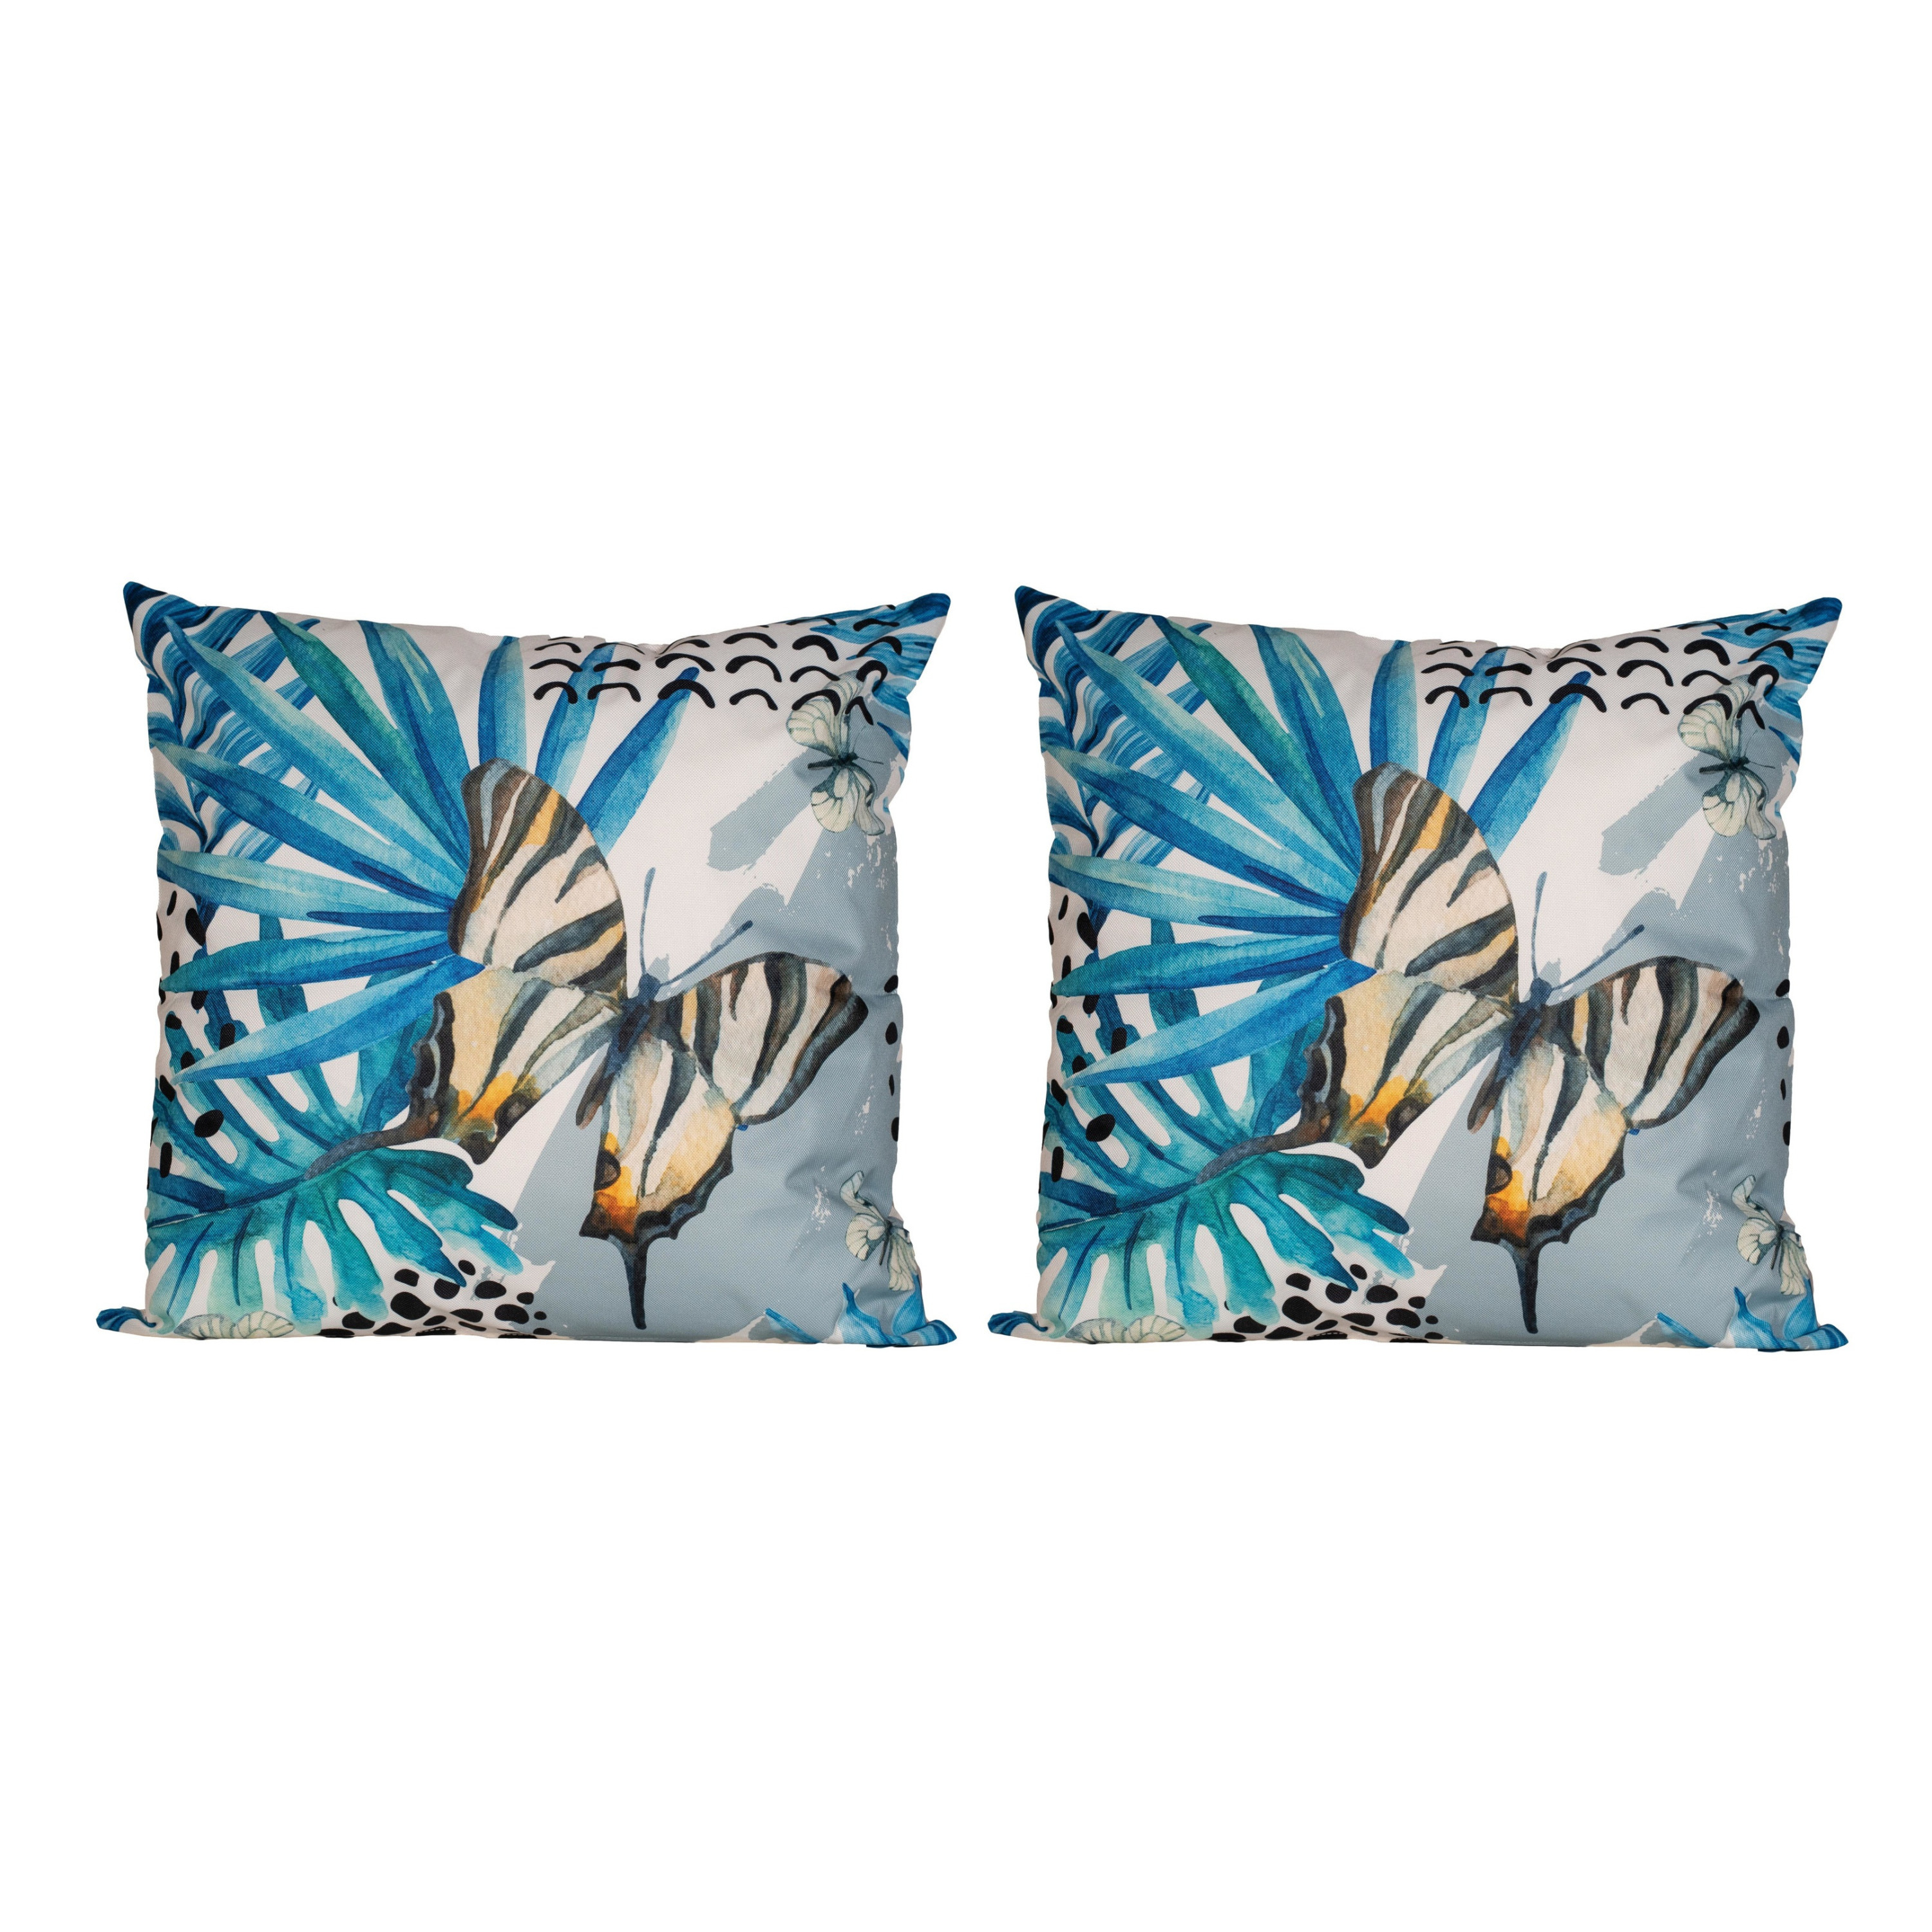 2x Bank-sier kussens met blauwe palm plant-bladeren print voor binnen en buiten 45 x 45 cm